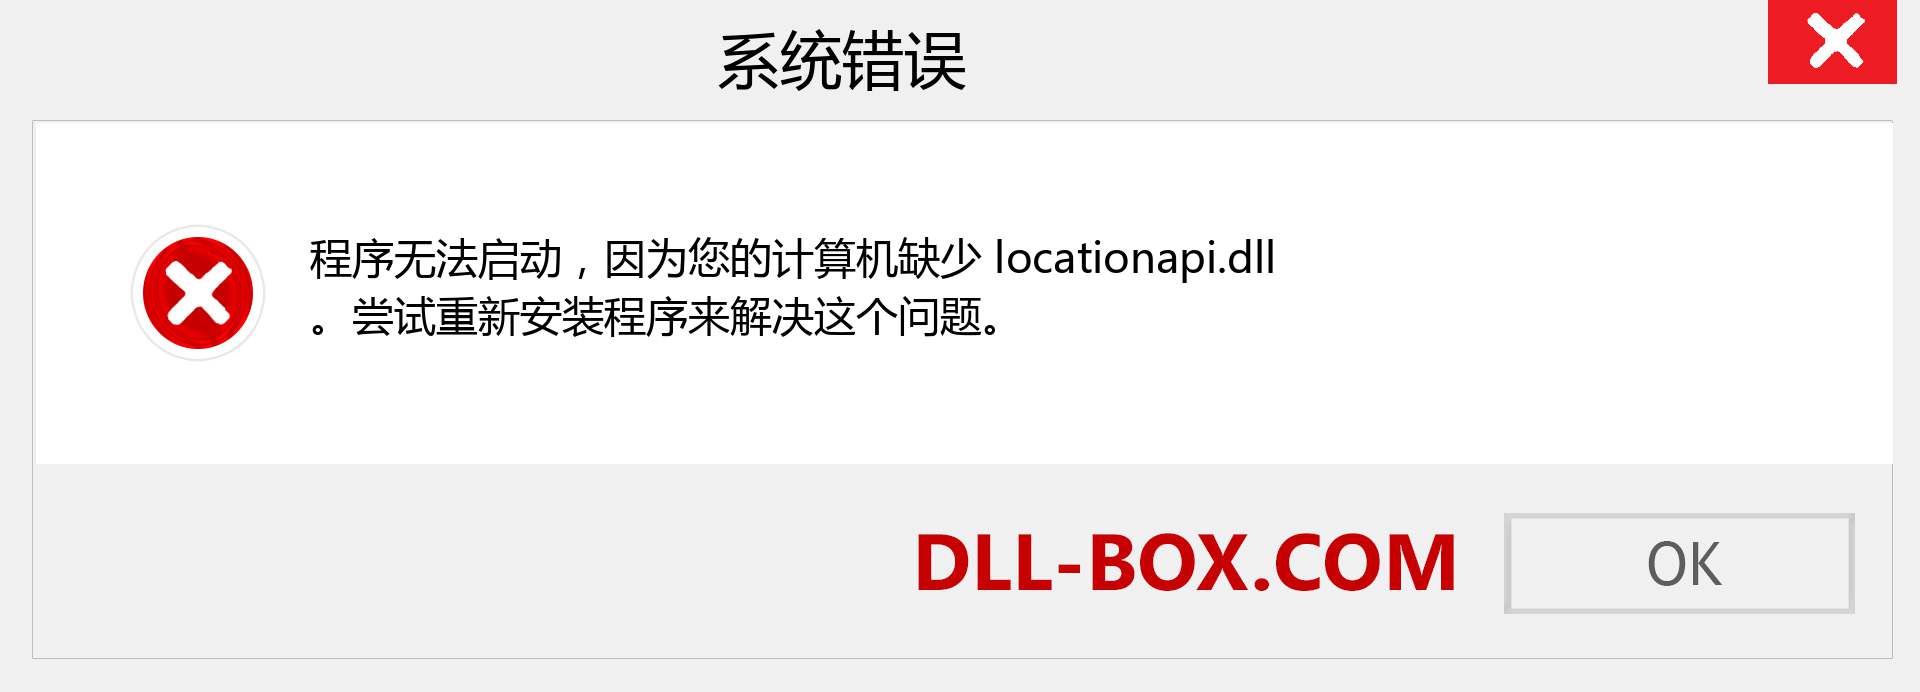 locationapi.dll 文件丢失？。 适用于 Windows 7、8、10 的下载 - 修复 Windows、照片、图像上的 locationapi dll 丢失错误